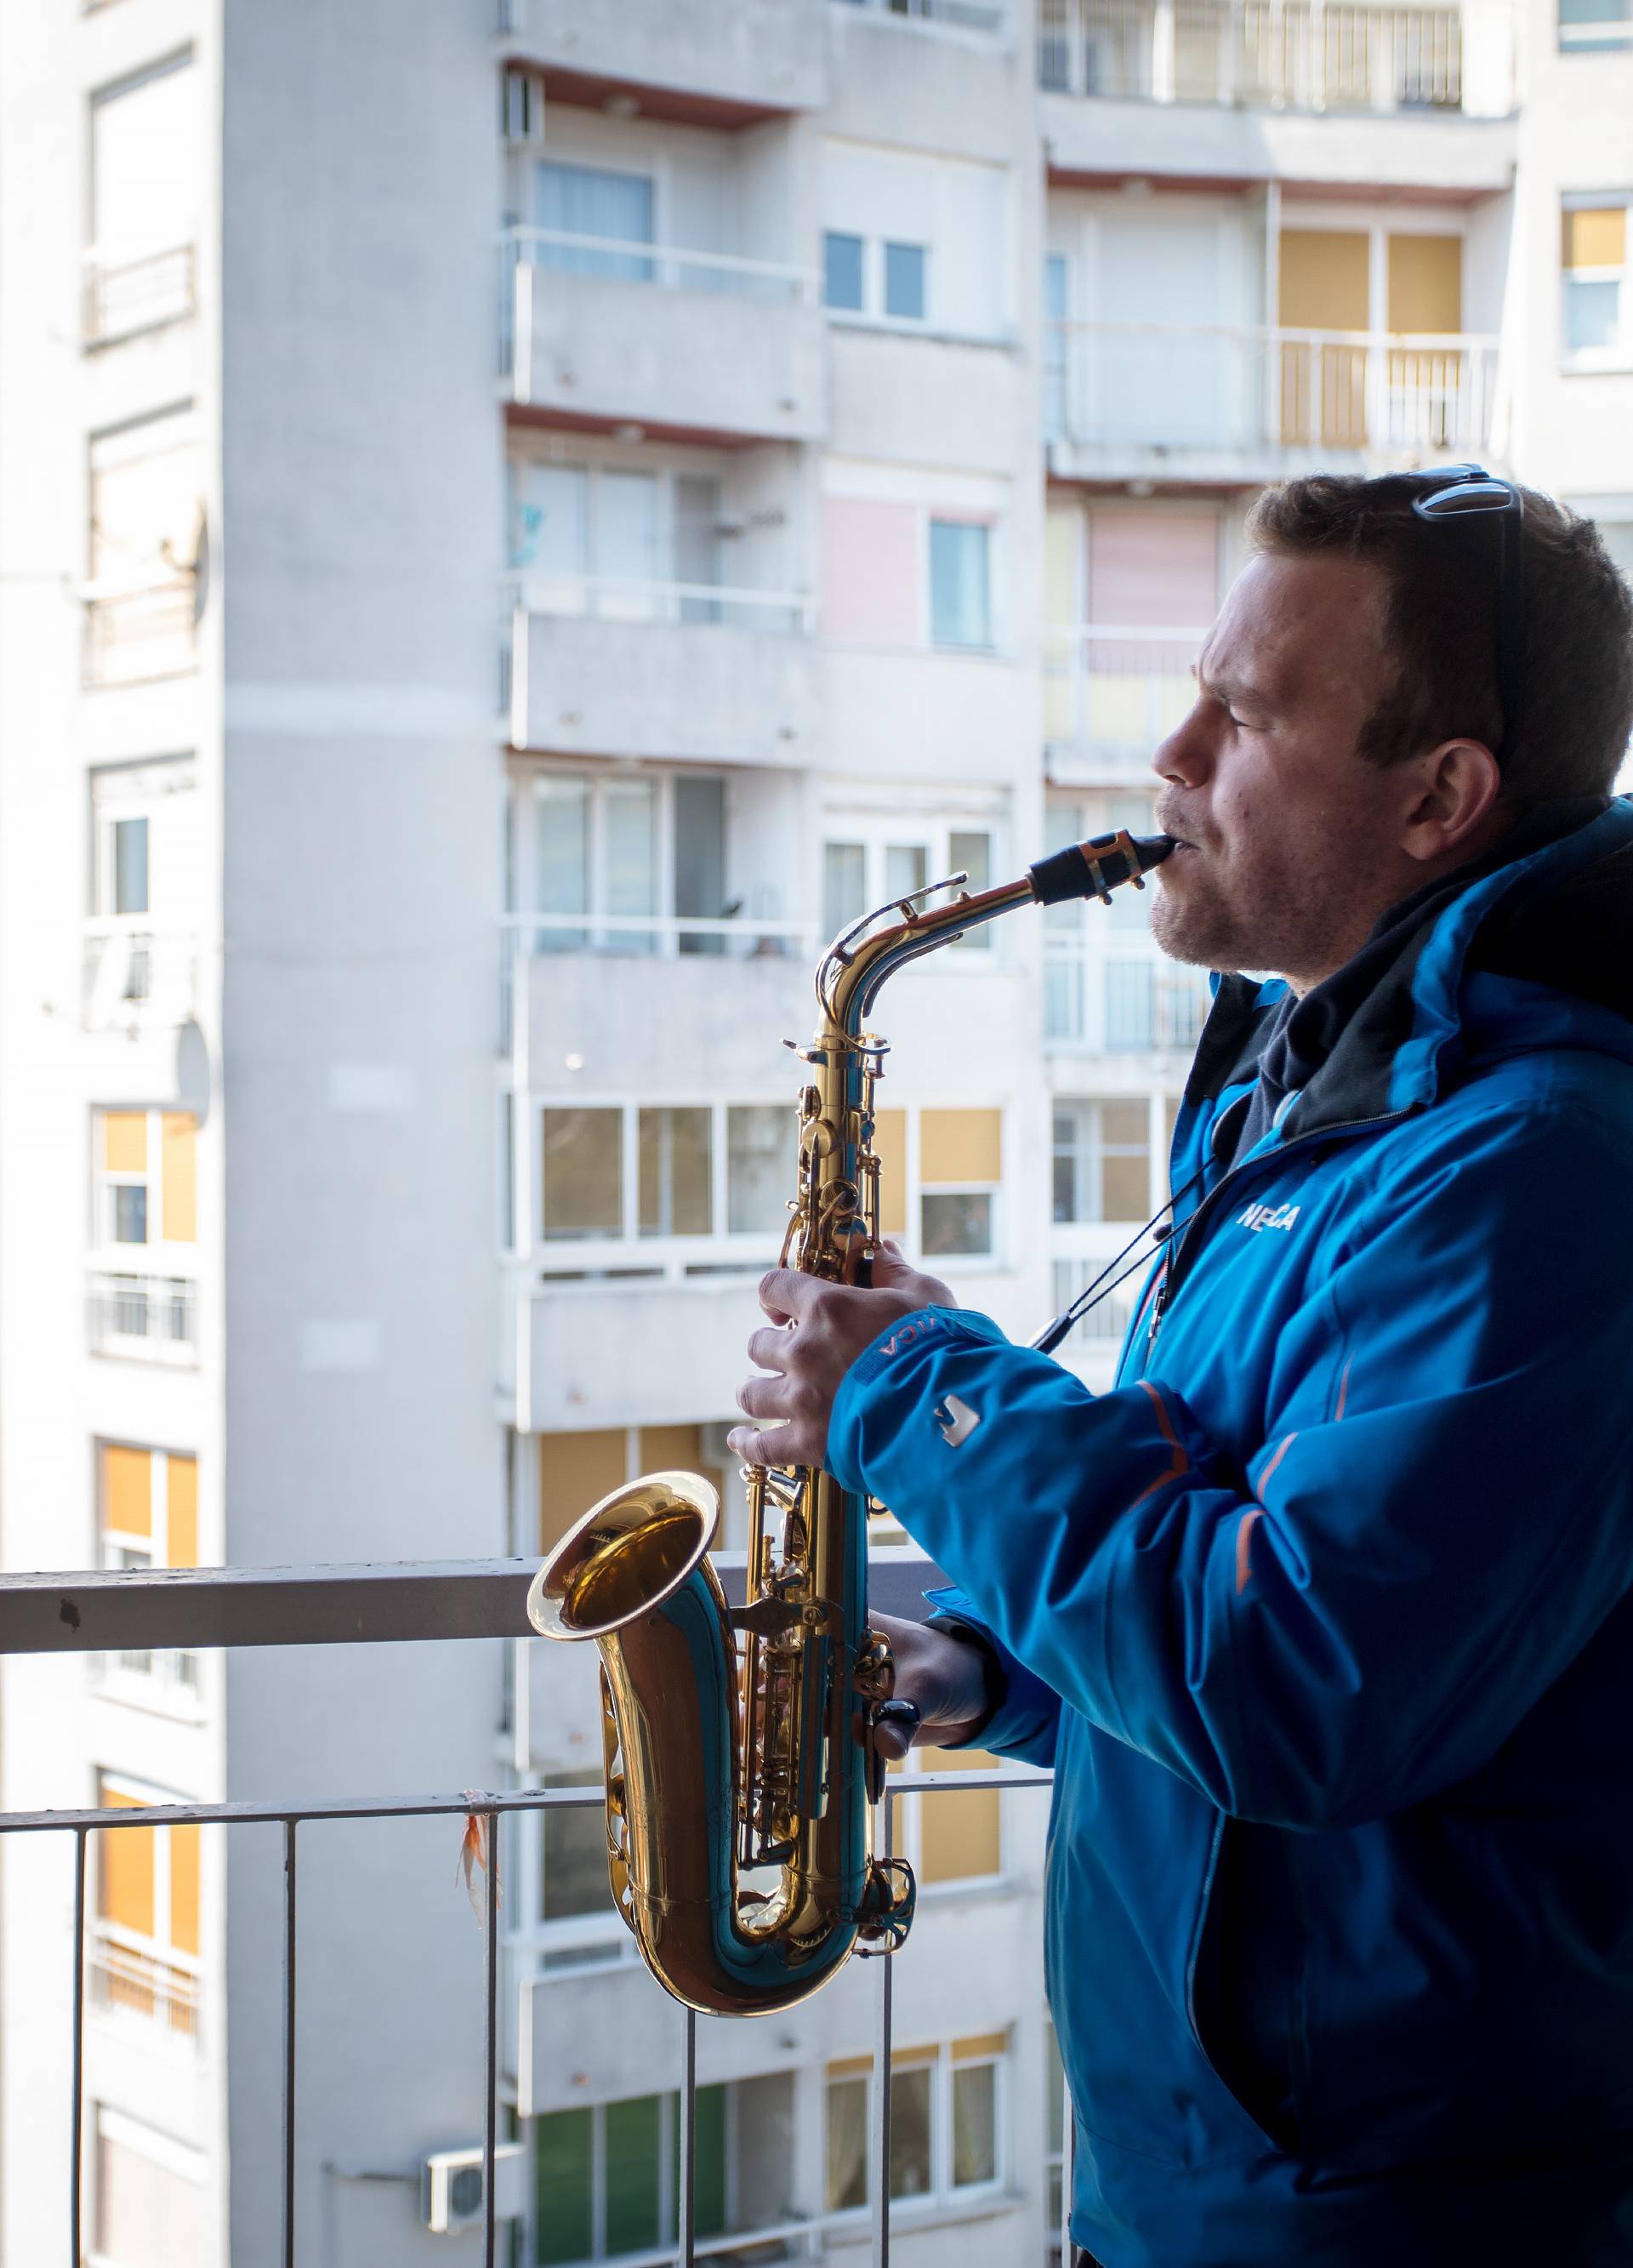 Saksofonom protiv karantene: Susjedima uljepšavam vrijeme